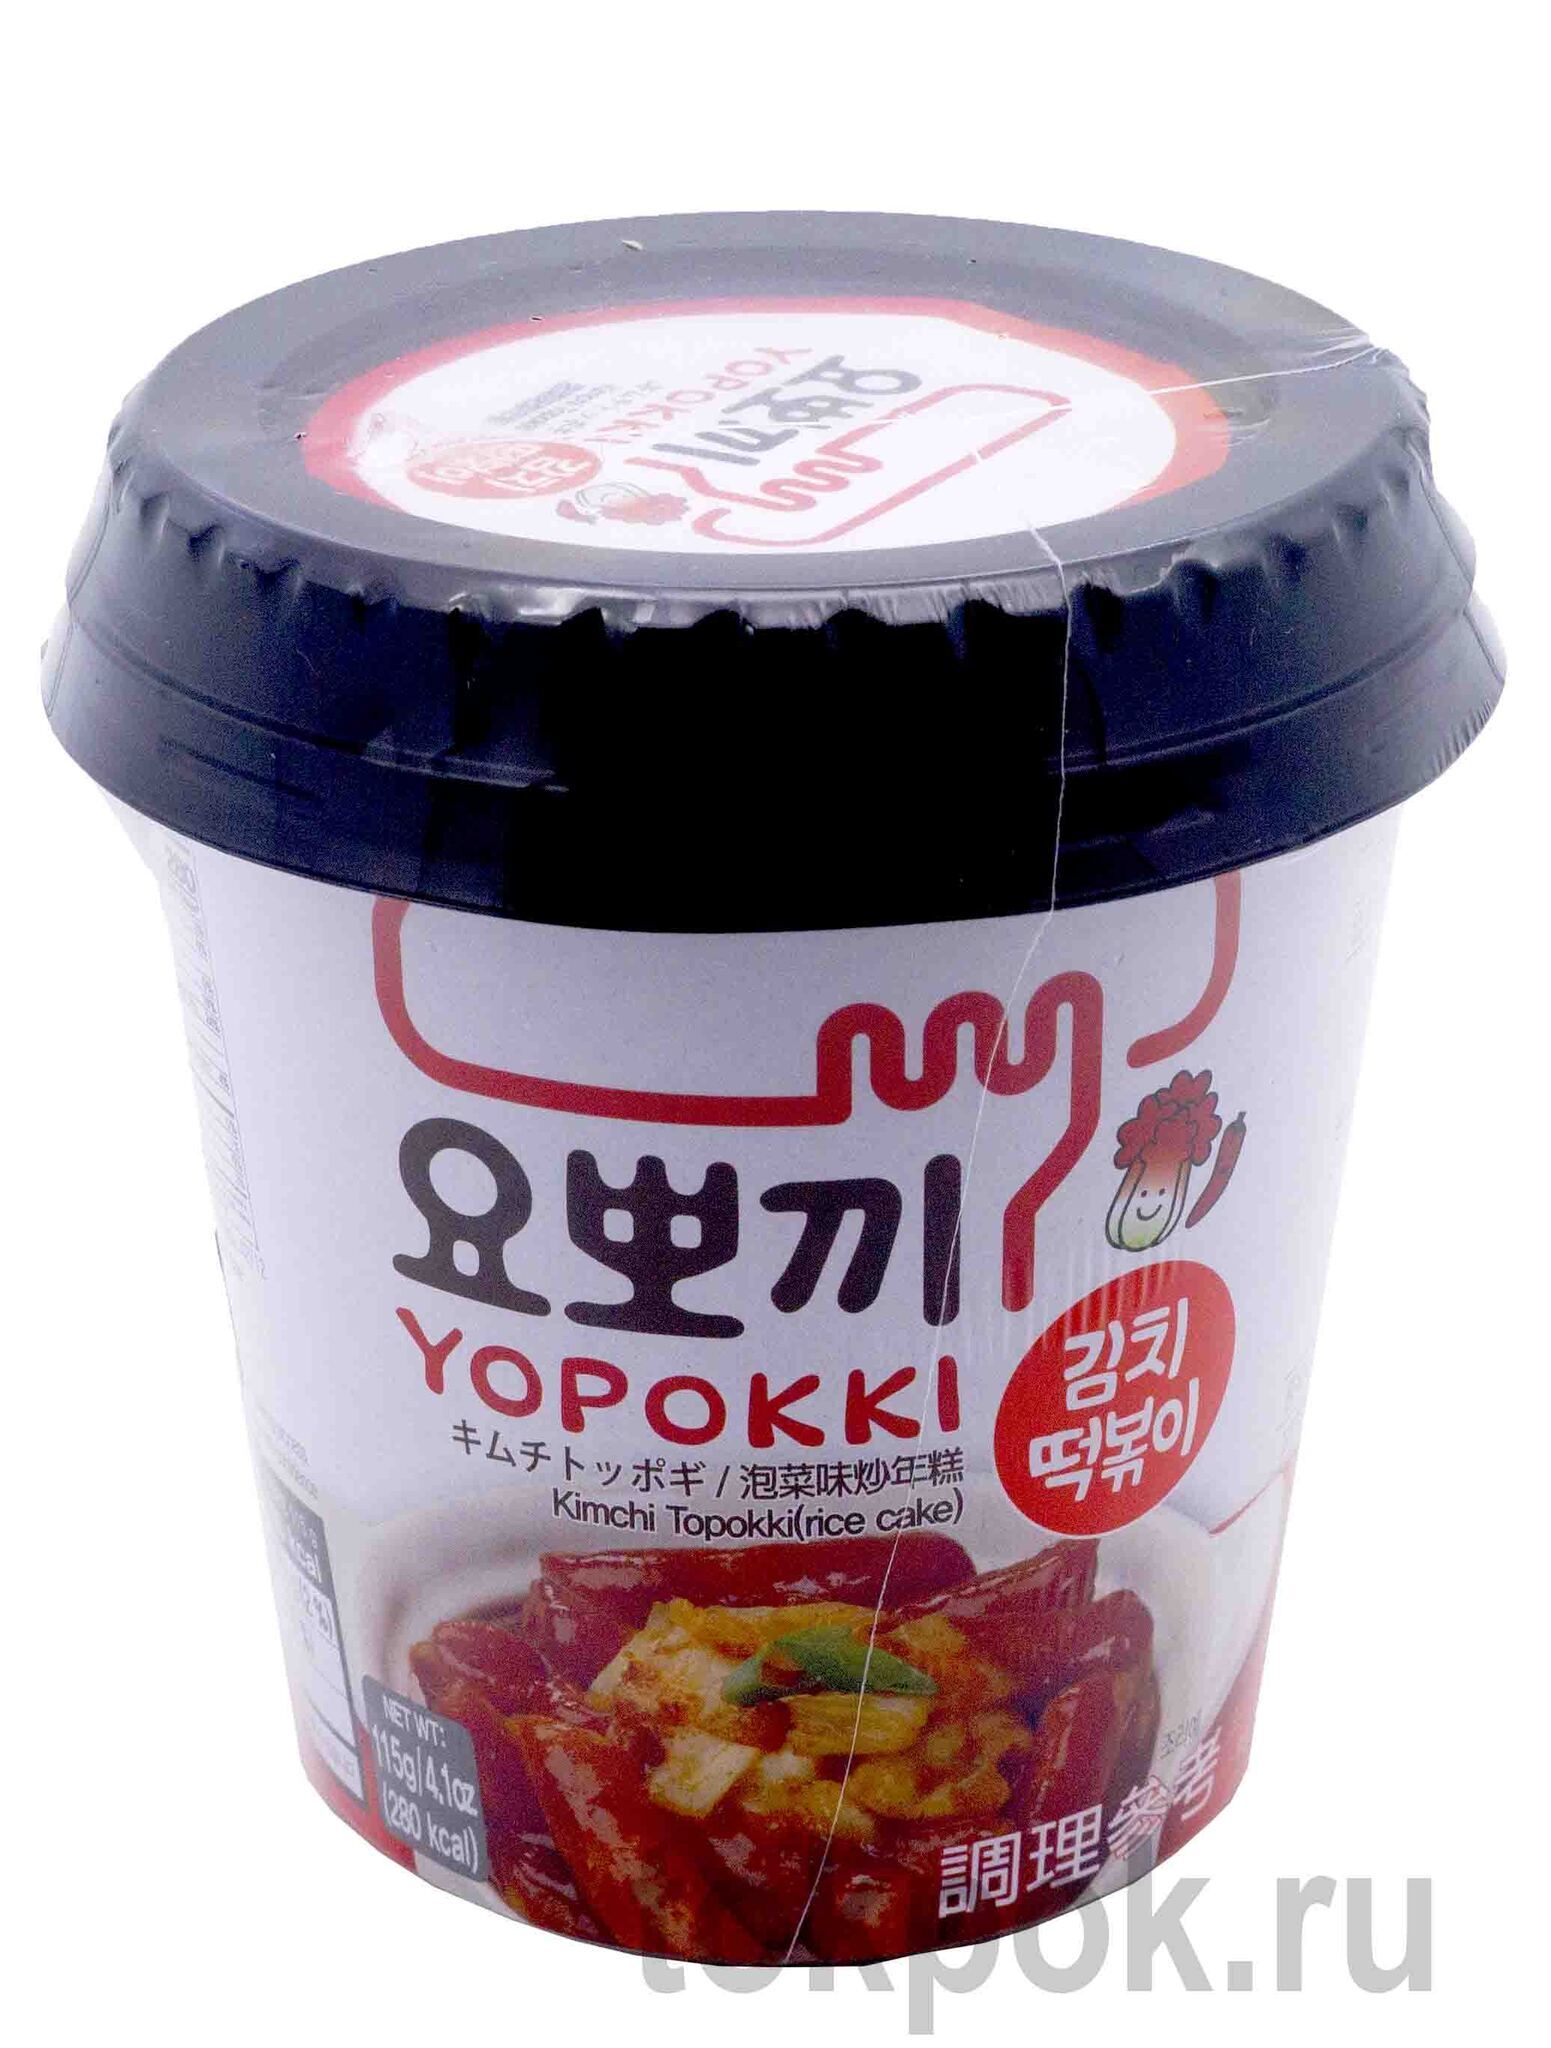 Токпокки (рисовые клецки) Yopokki с соусом кимчи, 115 гр